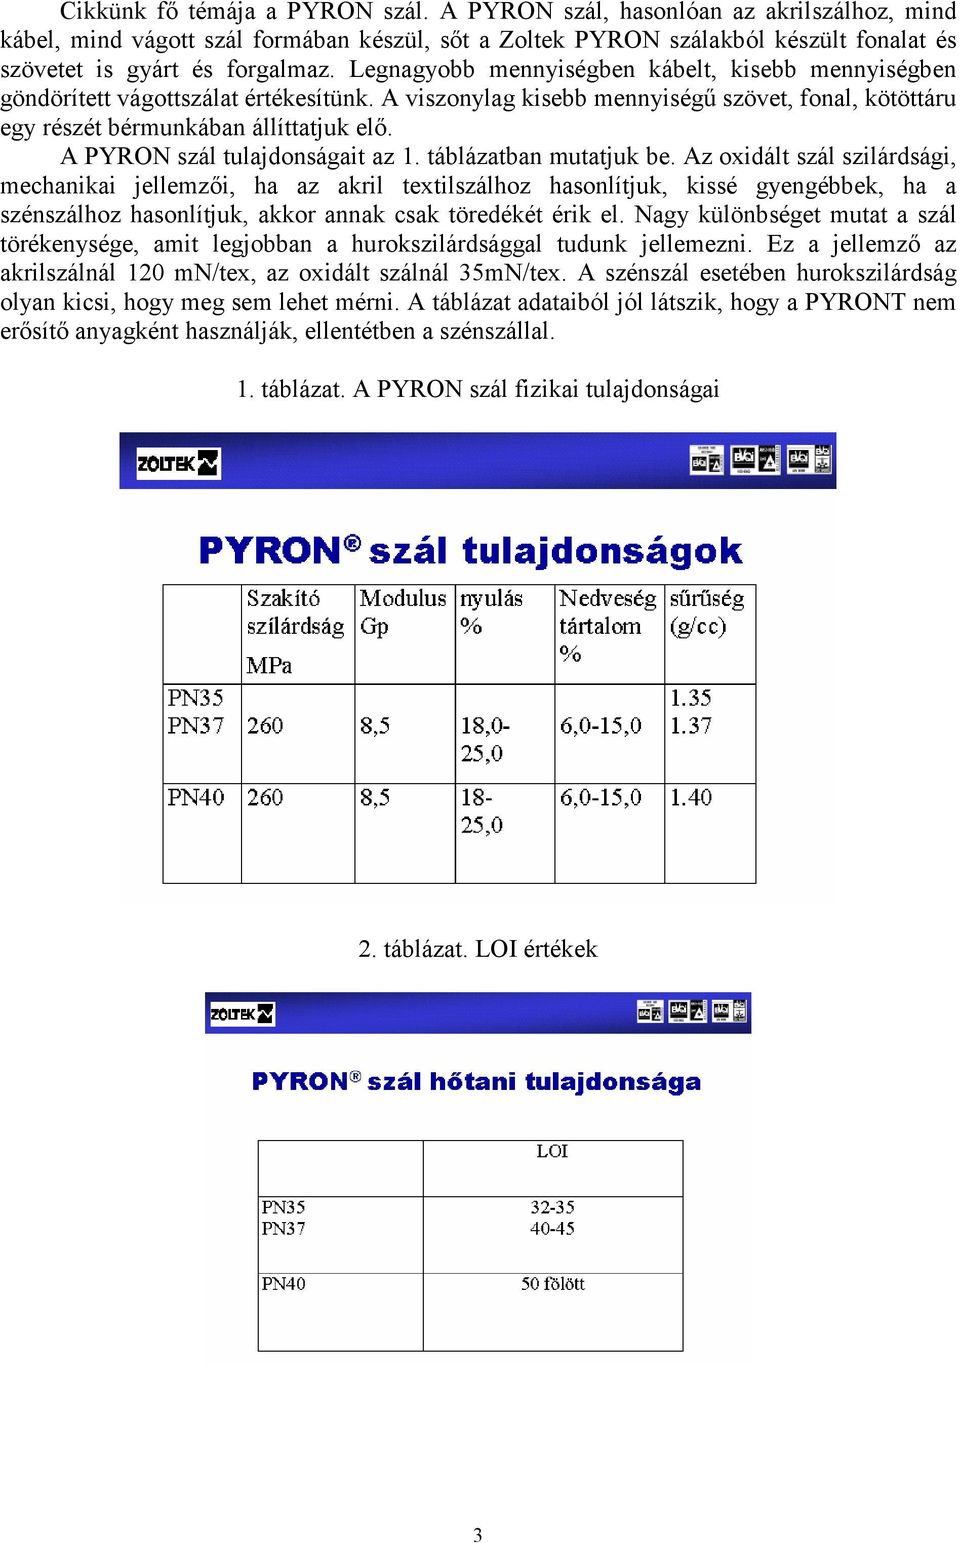 A PYRON szál tulajdonságait az 1. táblázatban mutatjuk be.